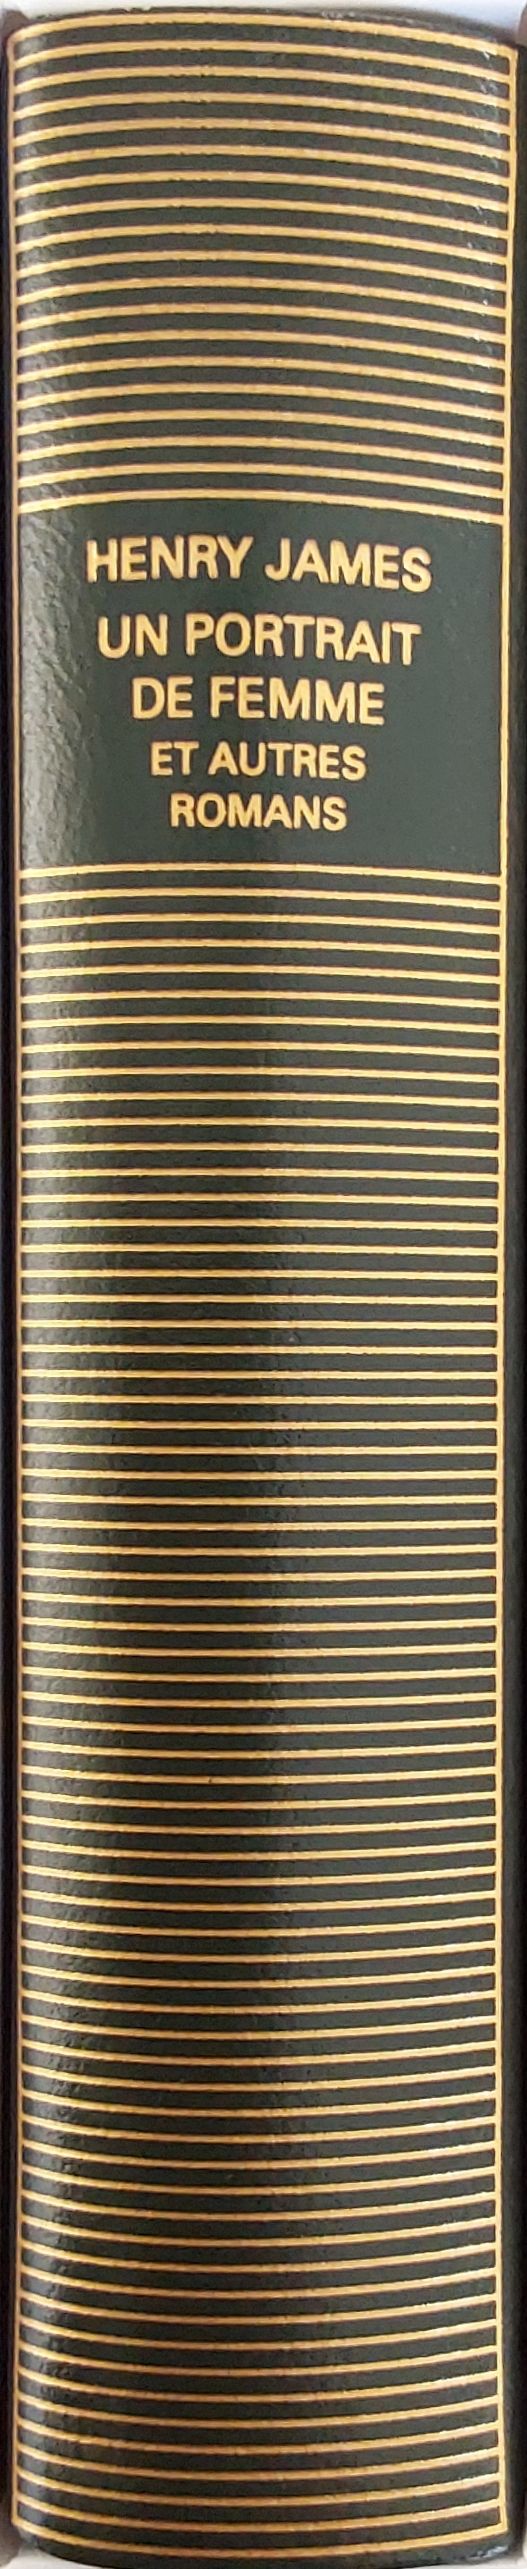 Volume 609 de Henry James dans la Bibliothèque de la Pléiade